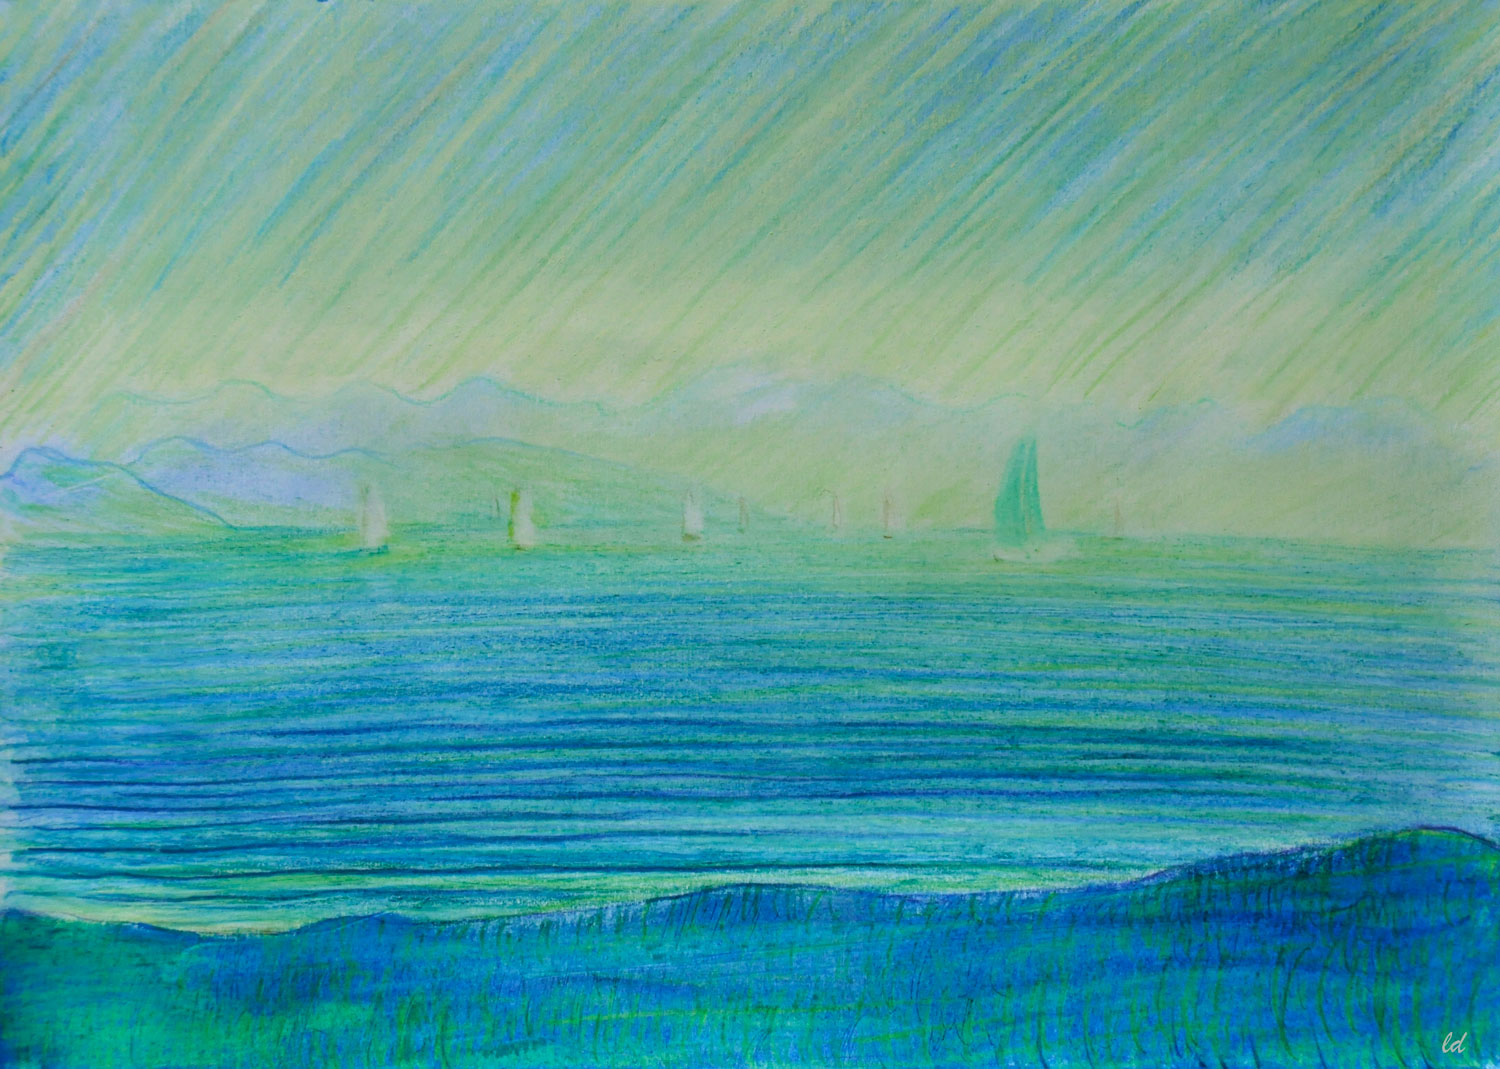 Lac Léman, St Prex, 29. Crayon de couleur, pastel et huile sur papier, 21x29, 2021